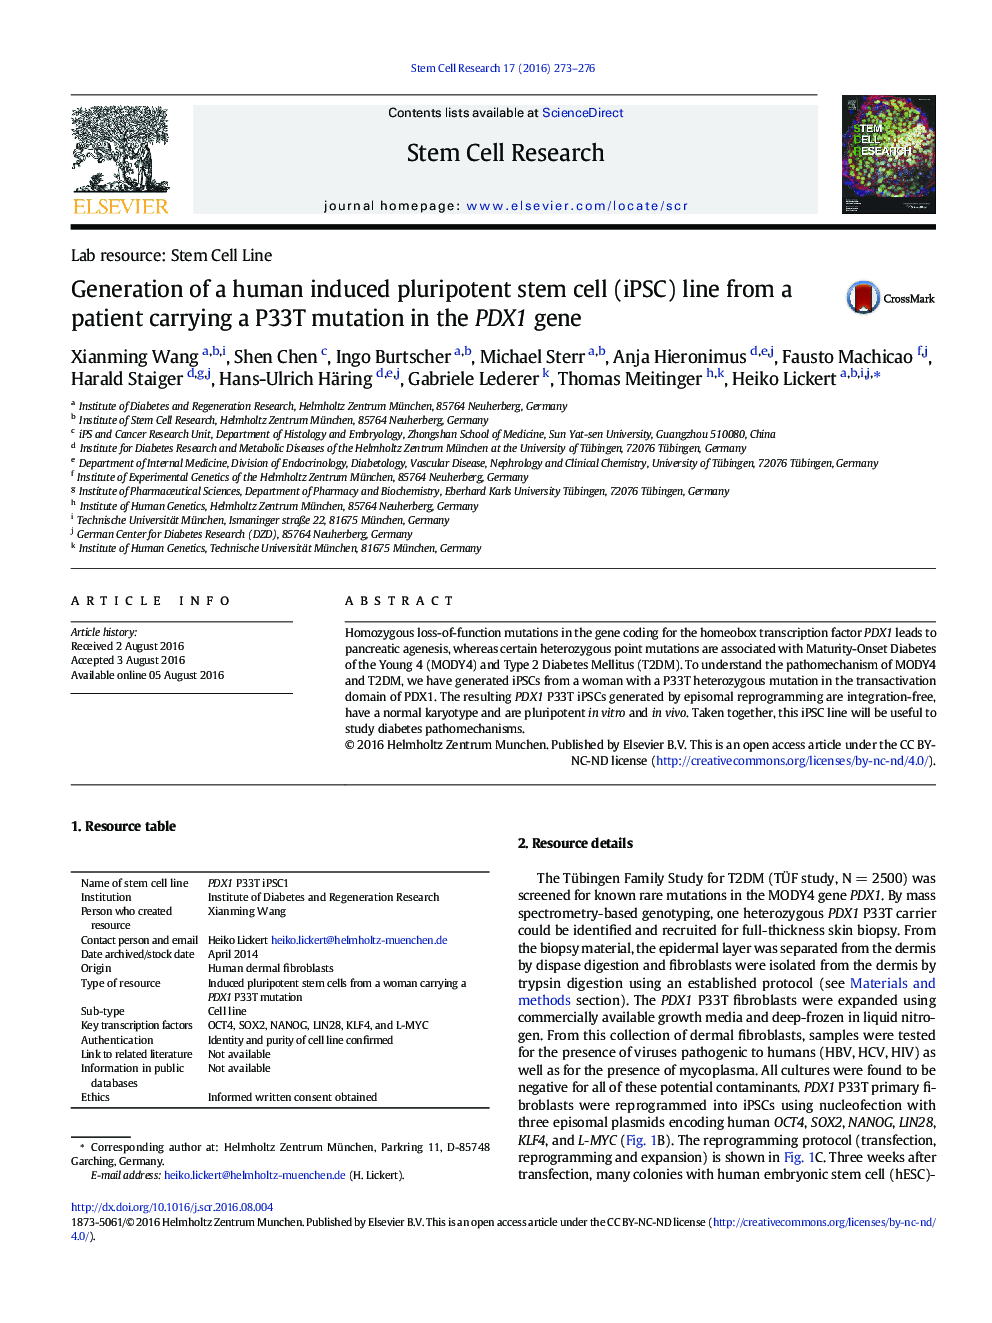 تولید یک خط سلول بنیادی pluripotent القا شده توسط انسان (iPSC) از یک بیمار که جهش P33T را در ژن PDX1 حمل می کند